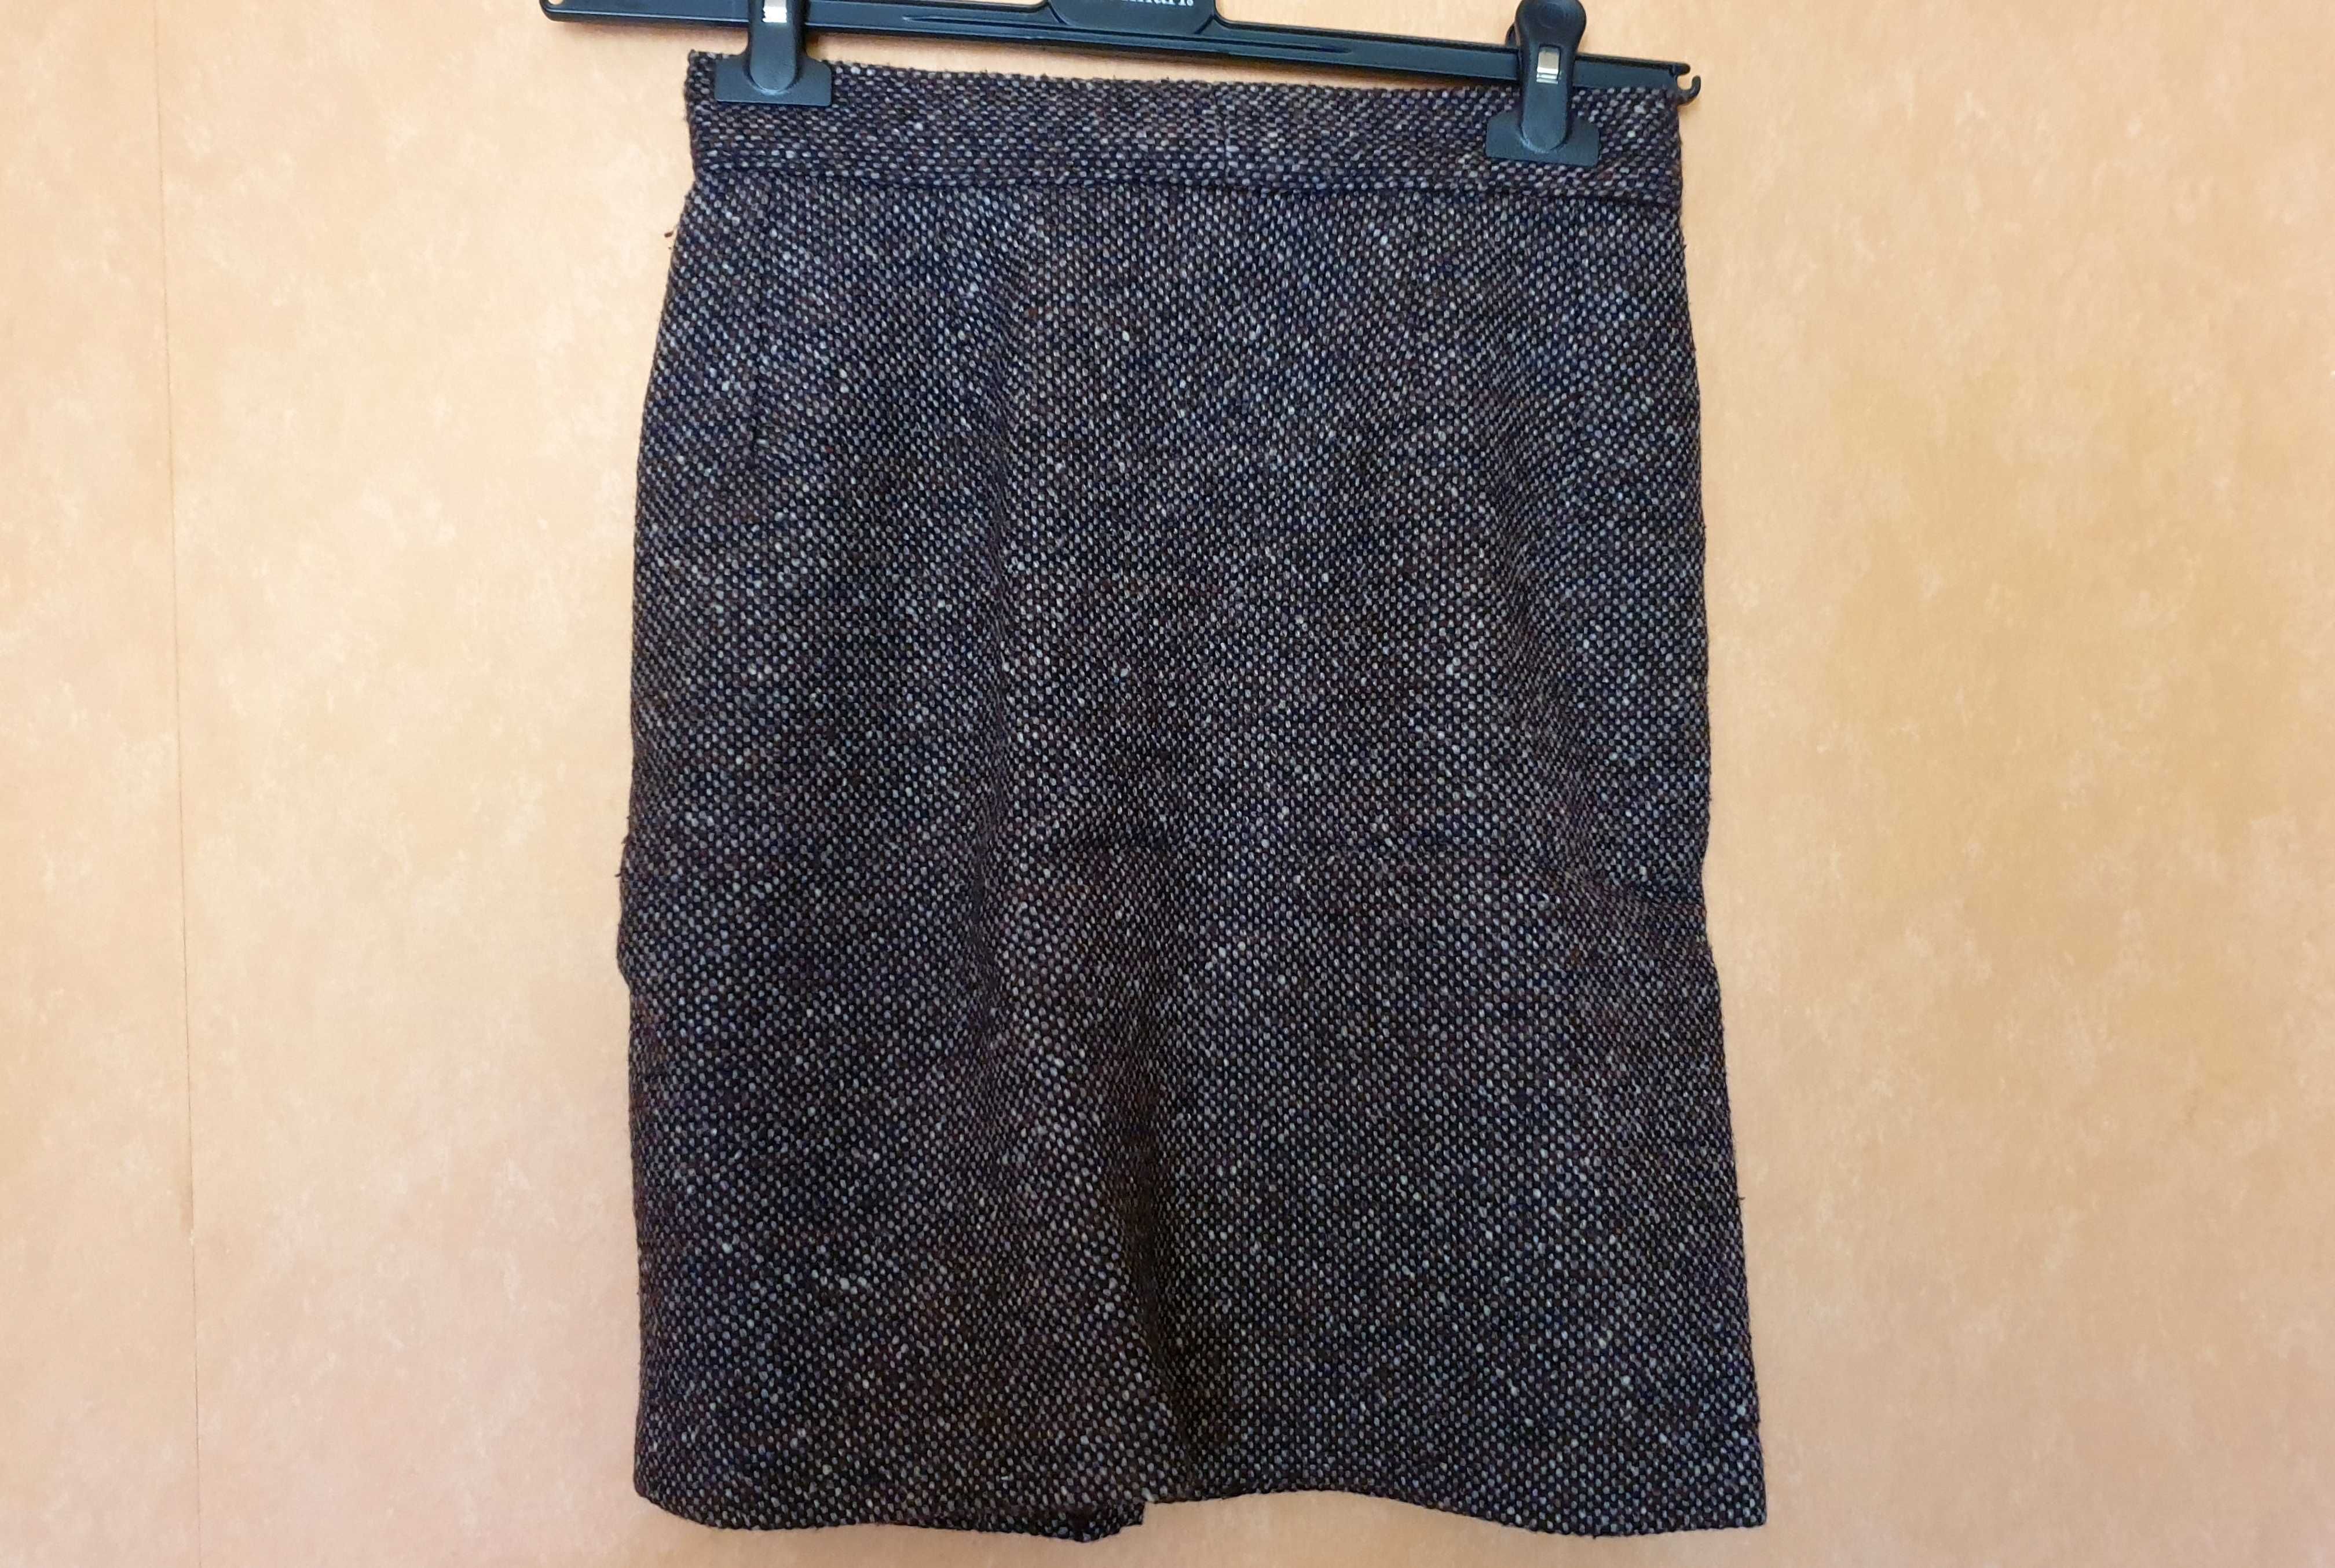 Spódnica ciemny, gruby materiał - rozmiar 67 cm